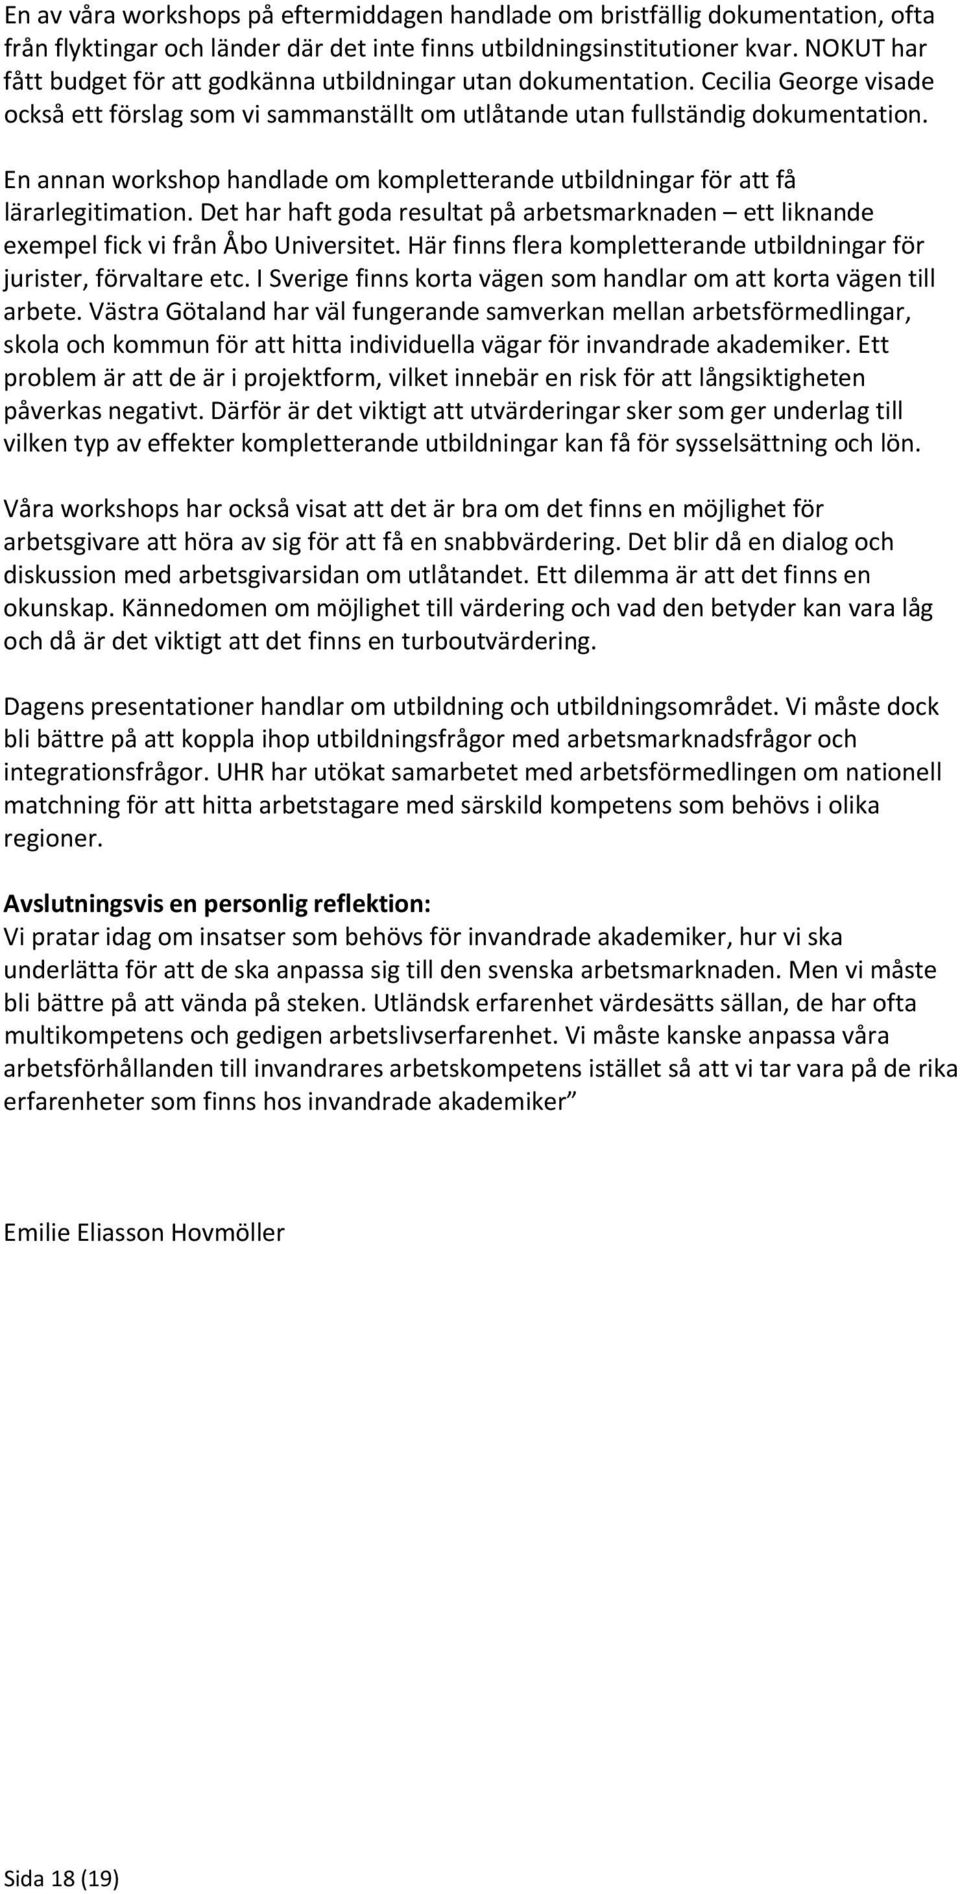 En annan workshop handlade om kompletterande utbildningar för att få lärarlegitimation. Det har haft goda resultat på arbetsmarknaden ett liknande exempel fick vi från Åbo Universitet.